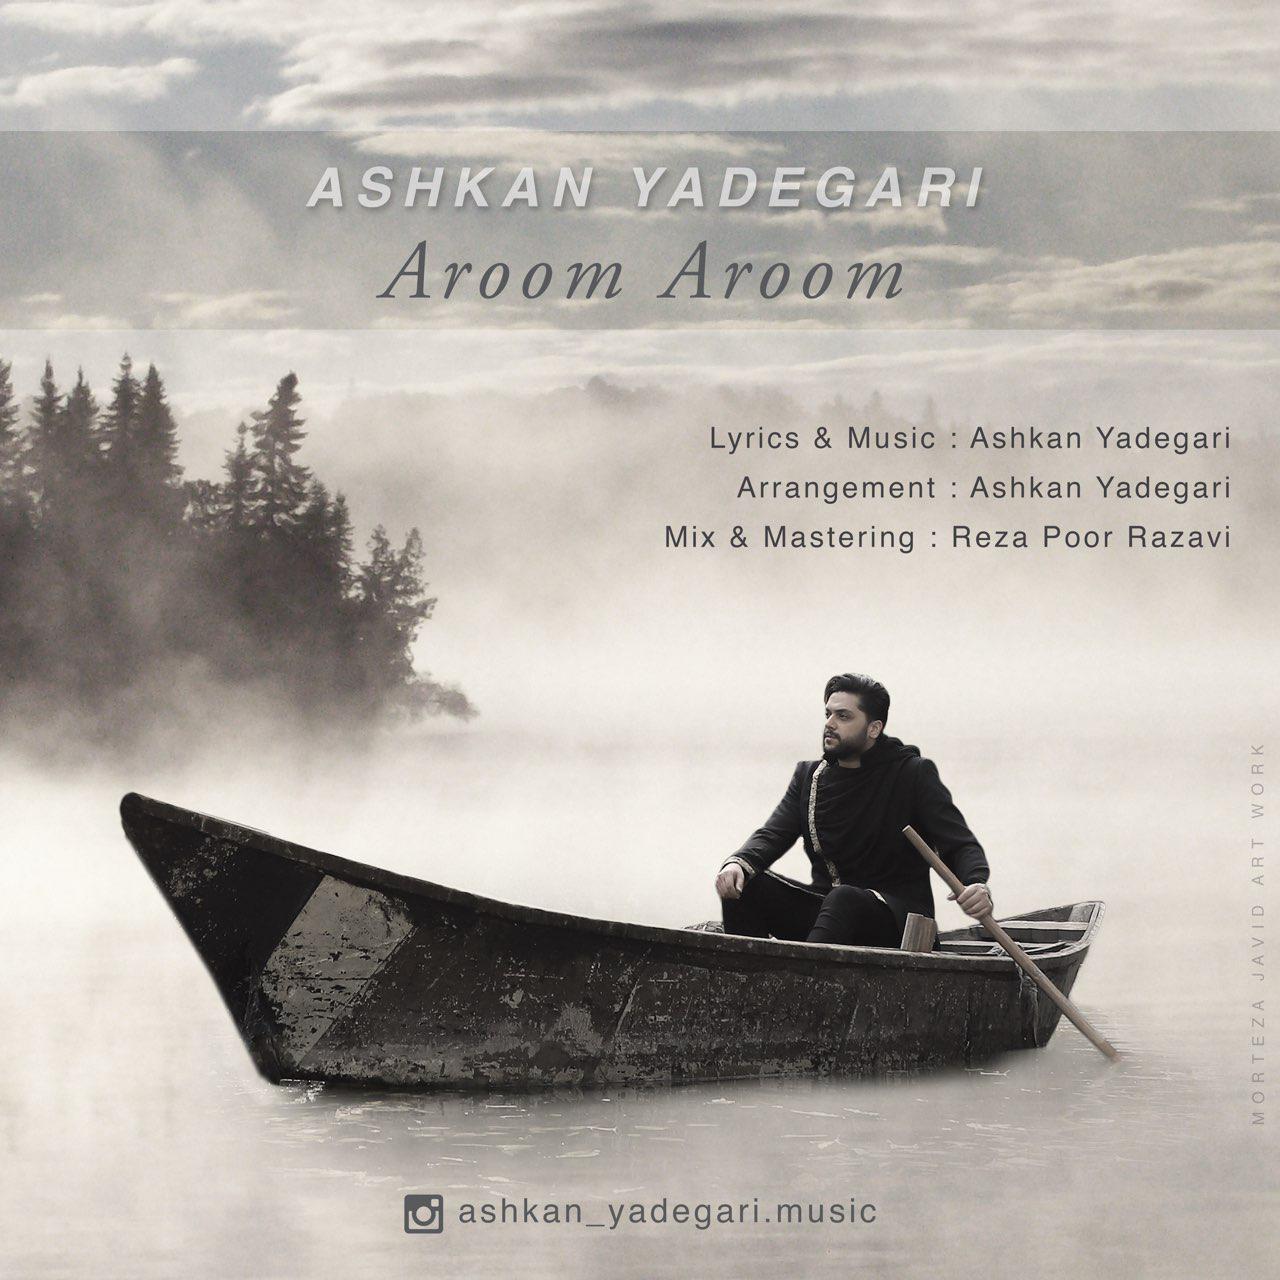  دانلود آهنگ جدید رامین ماهان - حس چشمات | Download New Music By Ashkan Yadegari - Aroom Aroom